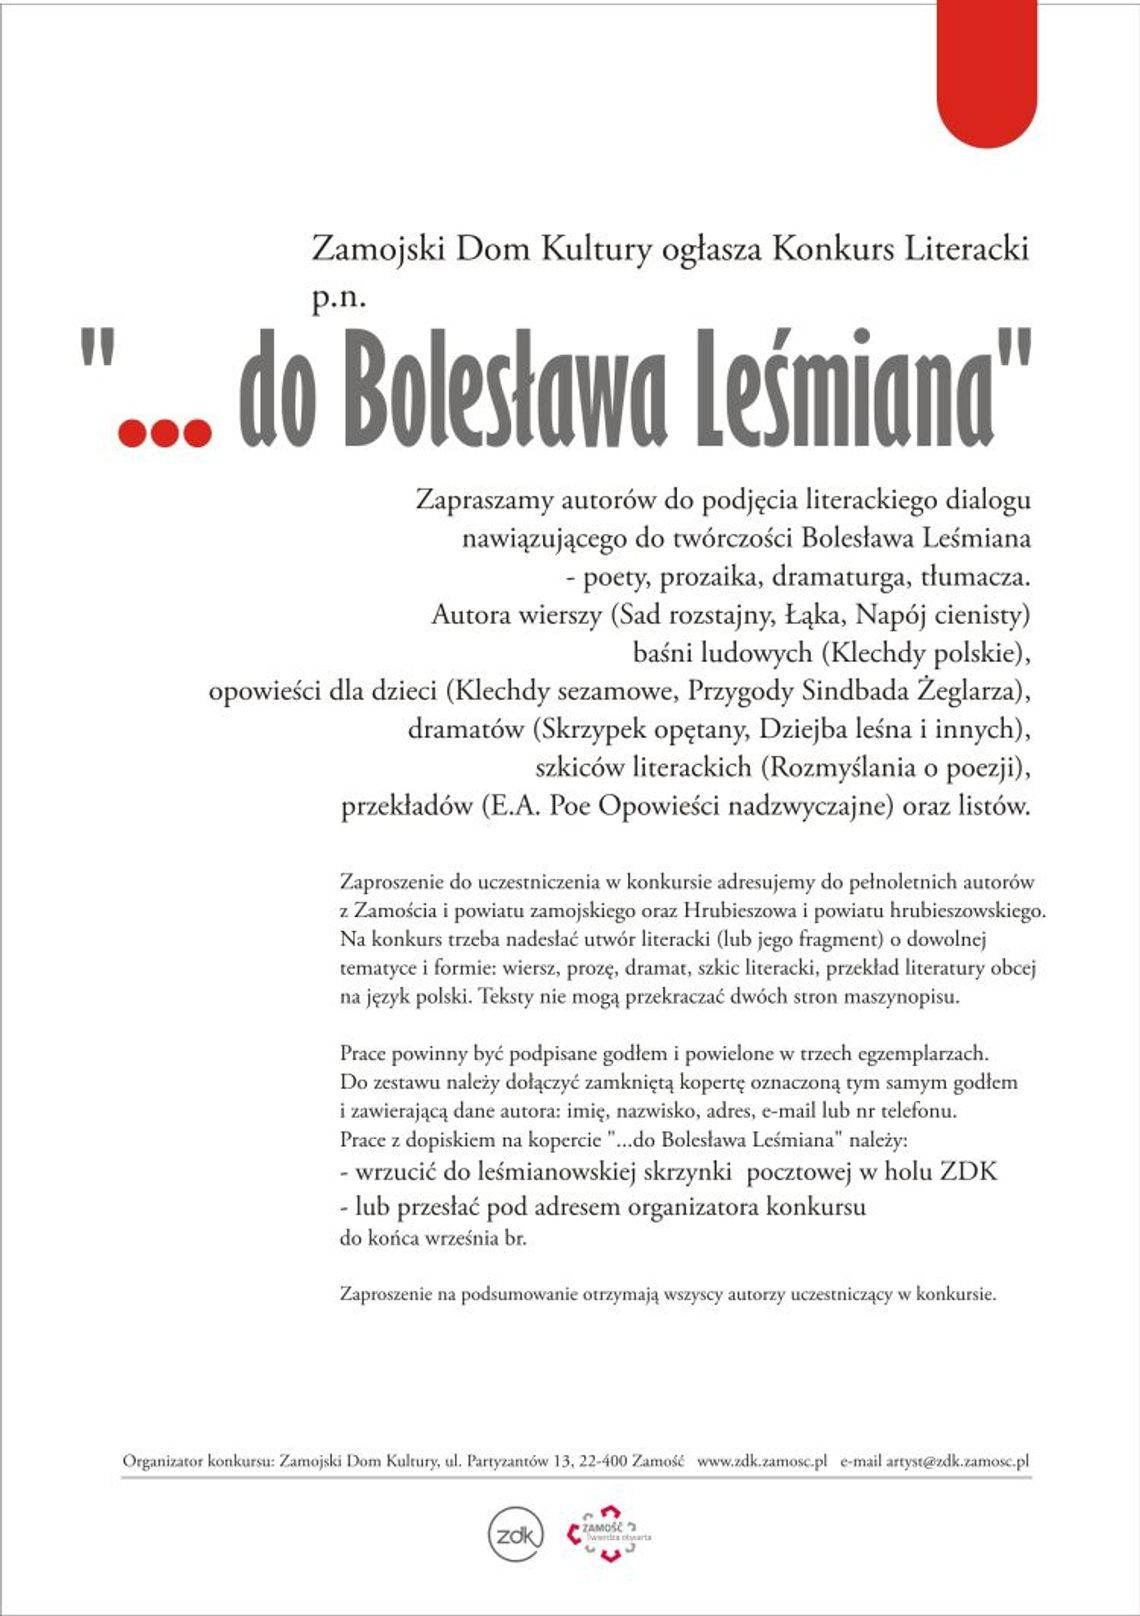 Literacki dialog z Leśmianem